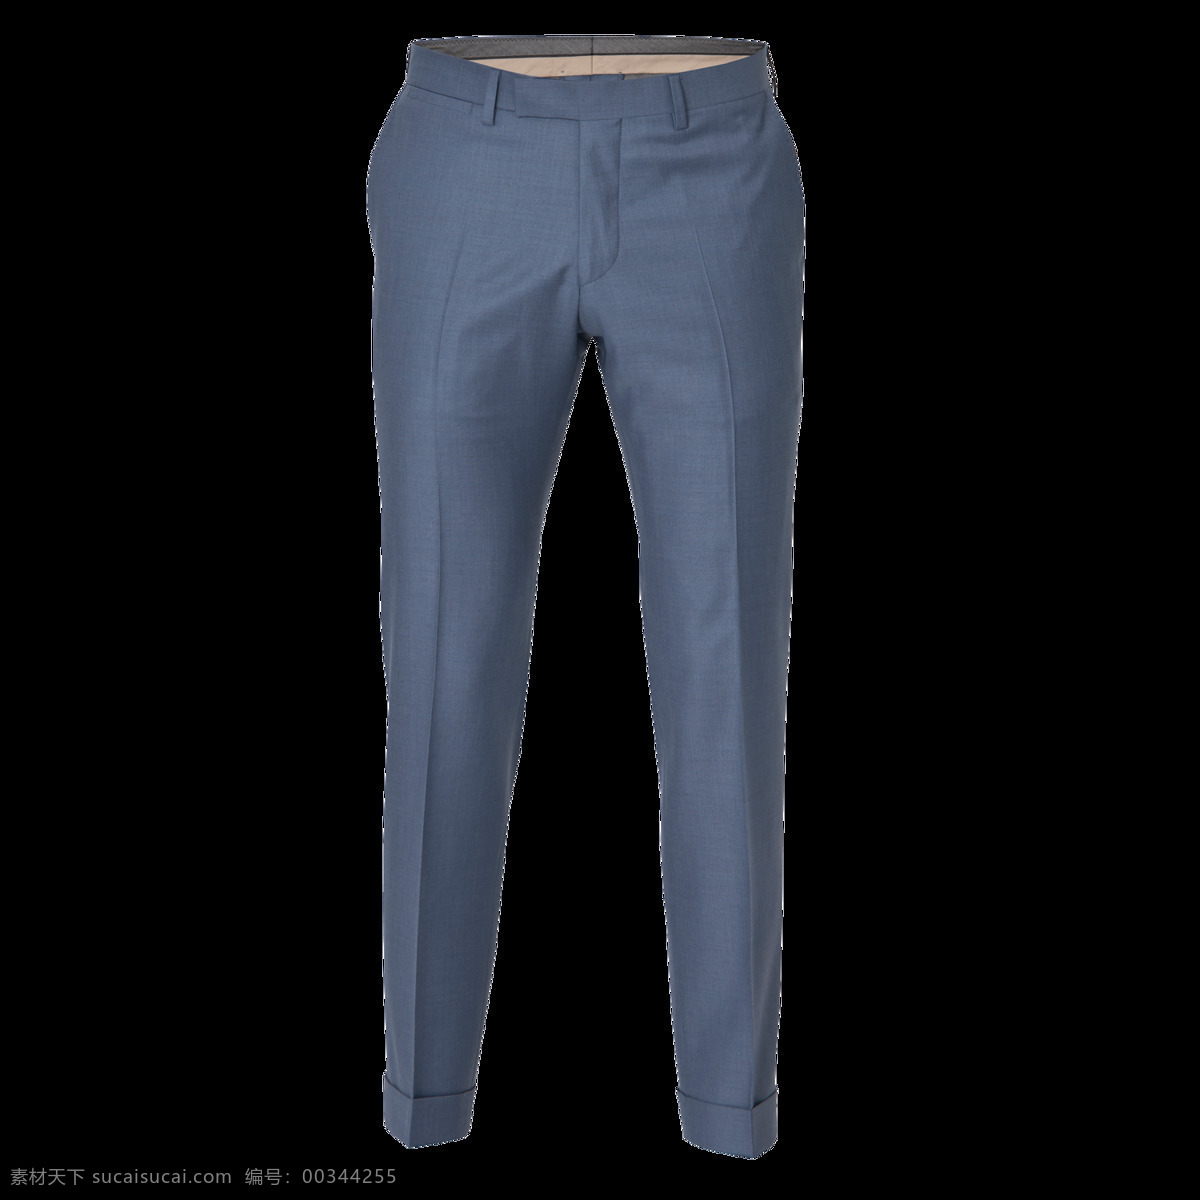 蓝色 男士 裤子 元素 png元素 免抠元素 男装 透明素材 西裤